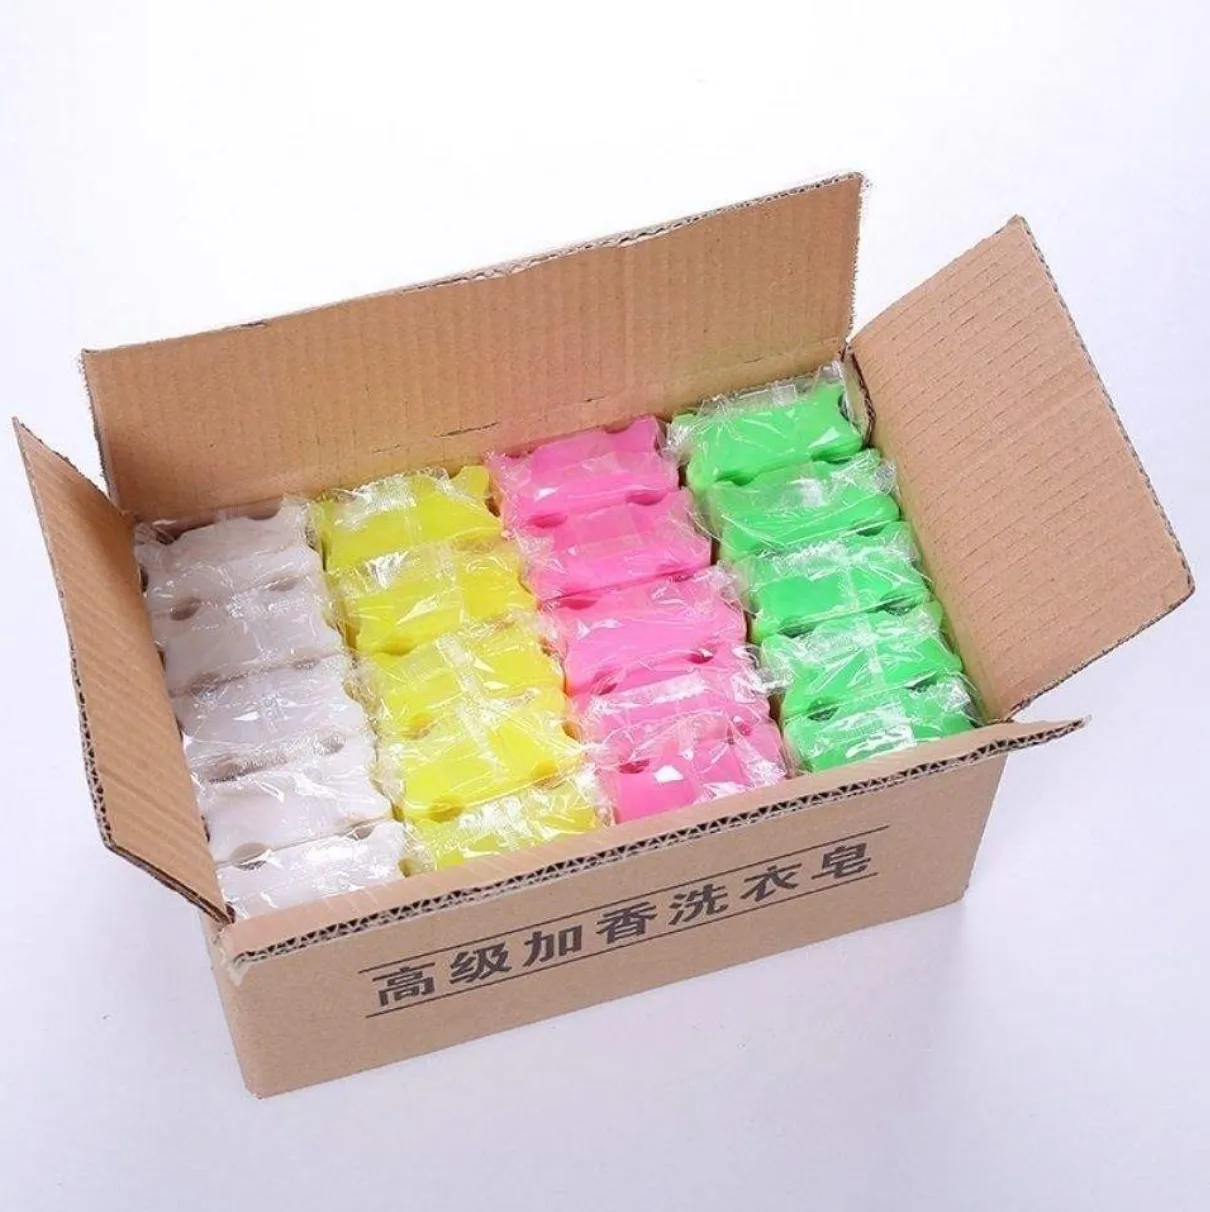 उच्च गुणवत्ता वाले वाणिज्यिक लाँड्री डिटर्जेंट साबुन बार ठोस आकार सस्ते दैनिक साबुन शिशुओं के लिए कस्टम इंडोनेशिया डिजाइन चीन